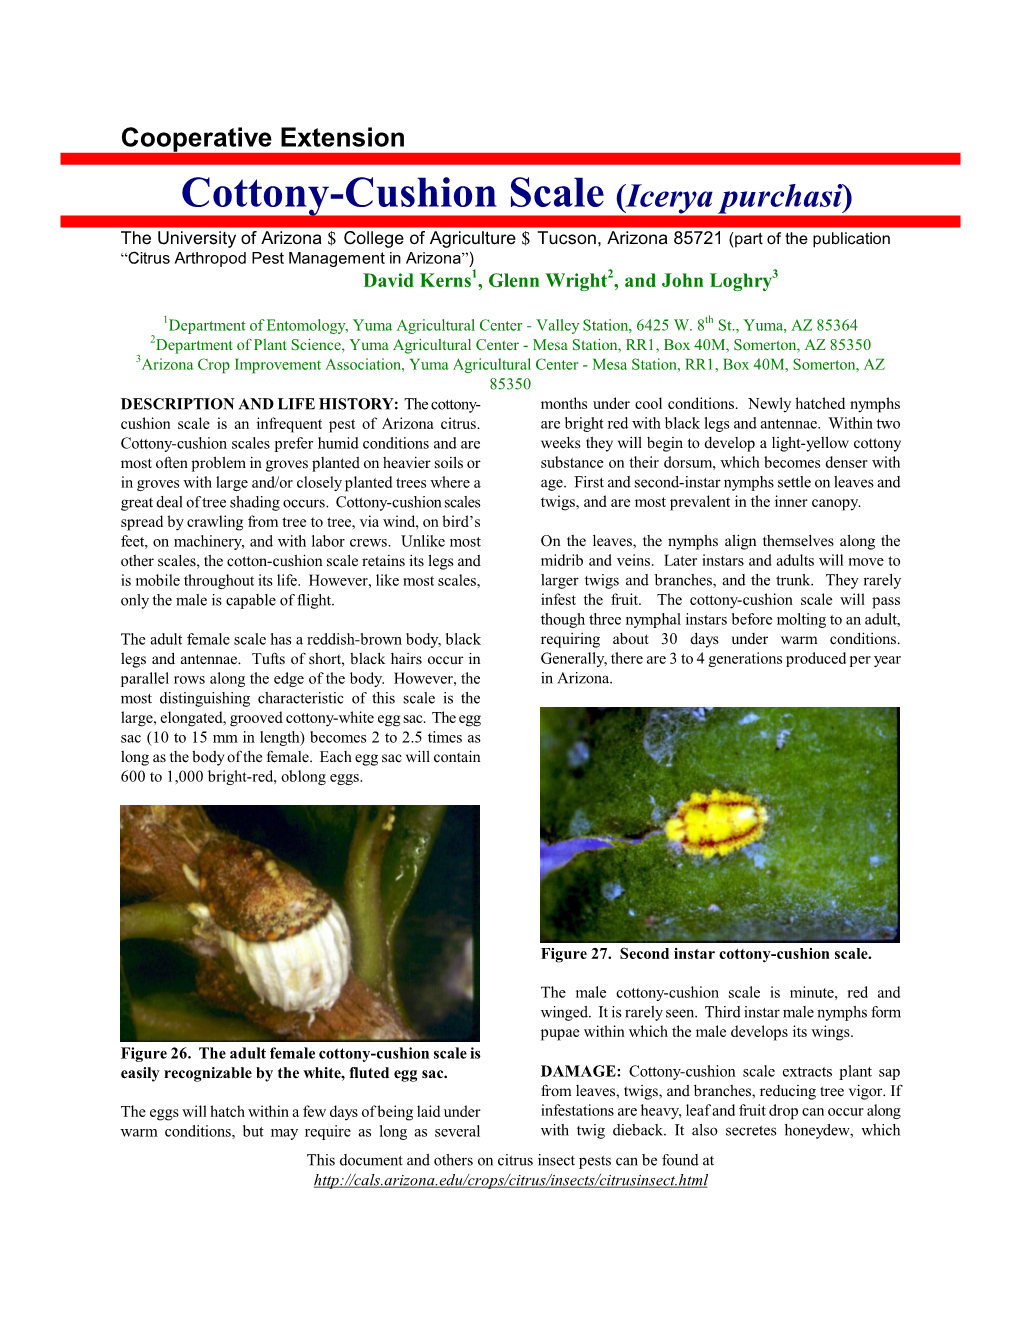 Cottony-Cushion Scale (Icerya Purchasi)